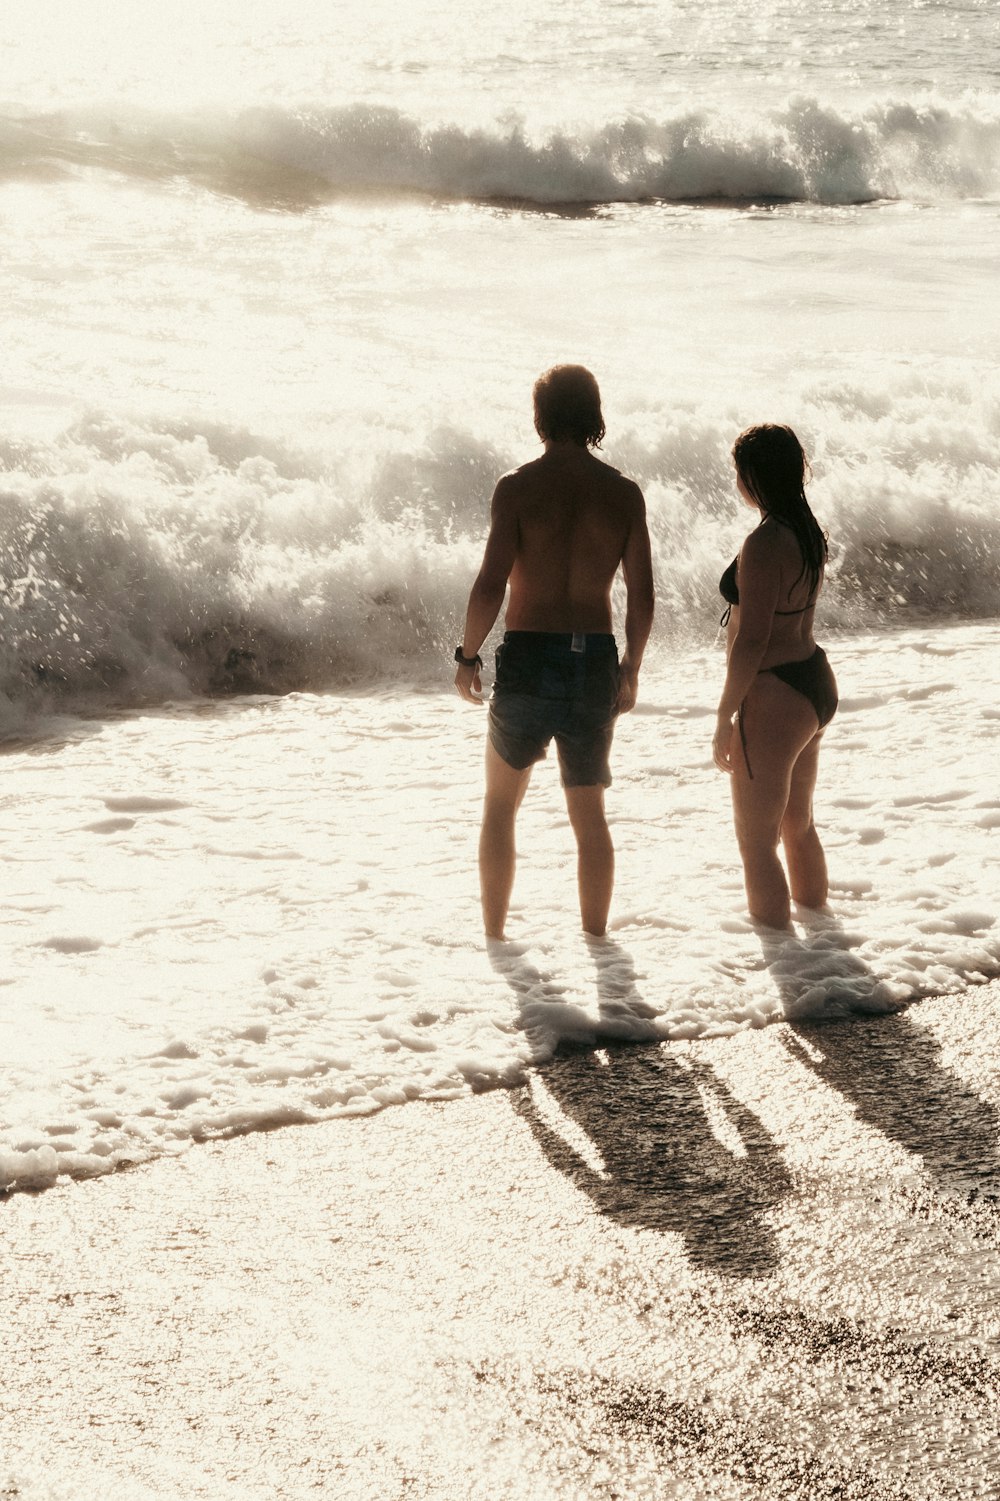 바다 옆 해변에 서 있는 남자와 여자